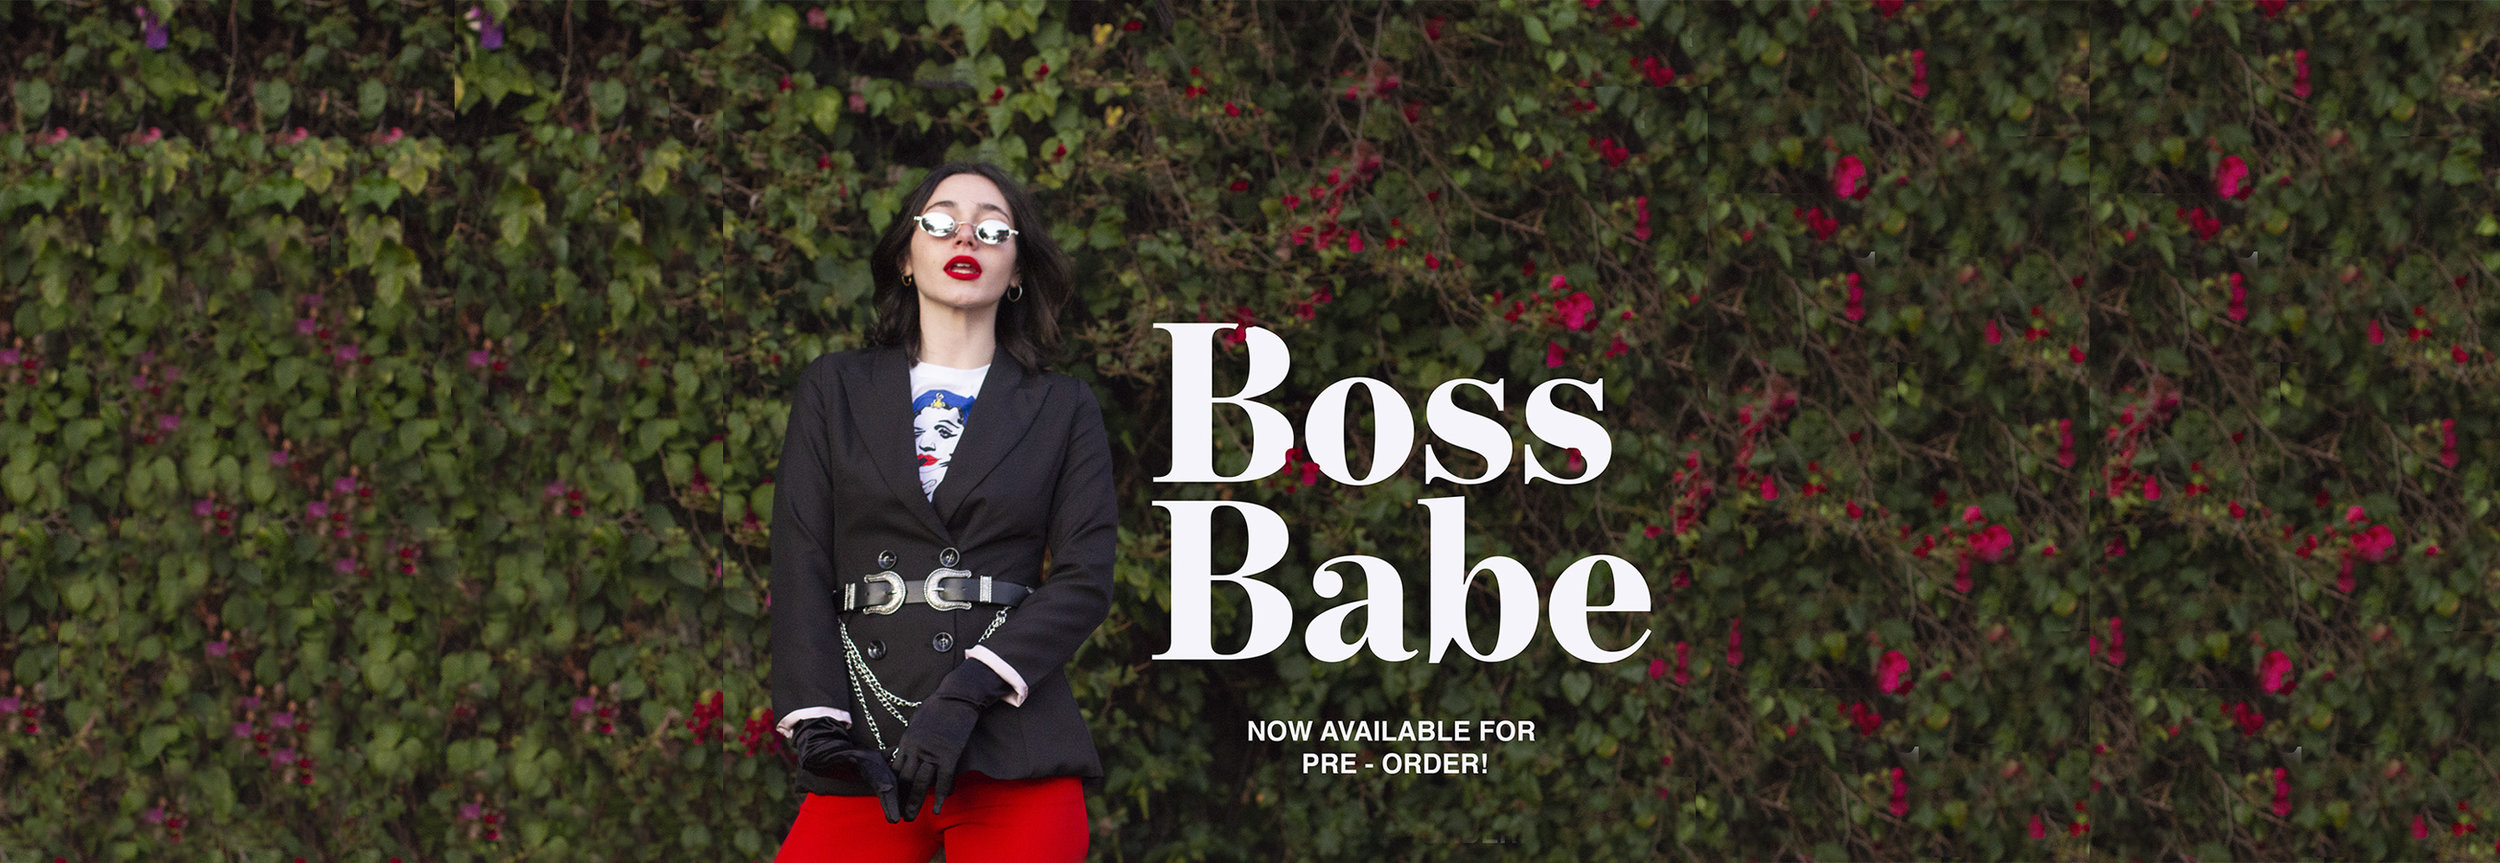 Boss Babe Banner 2.jpg